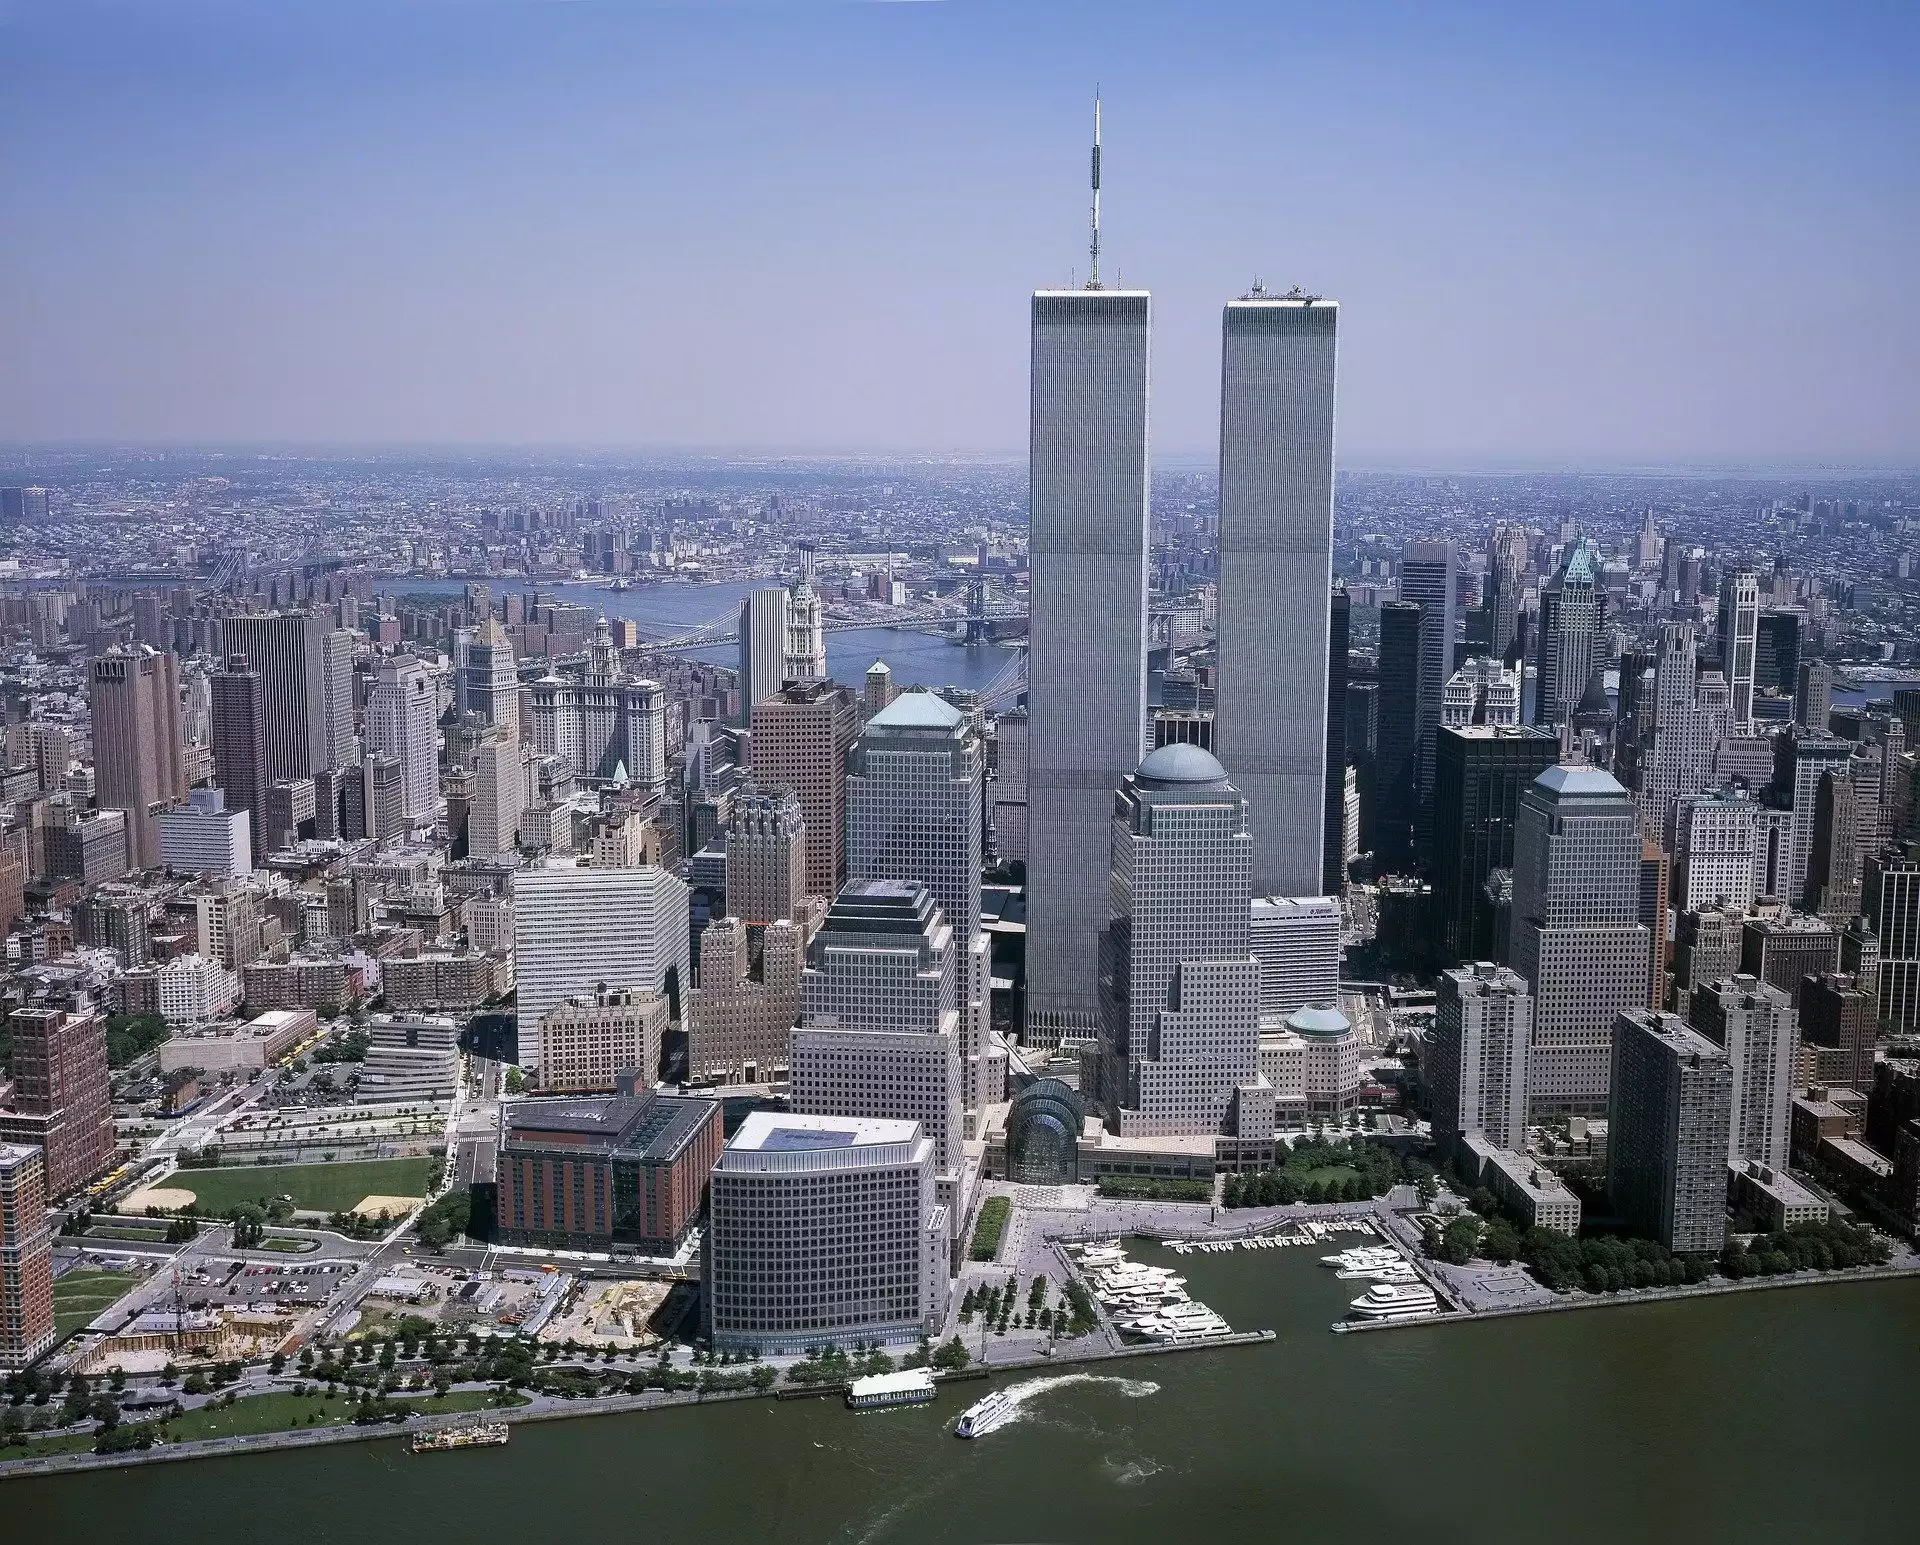 Události 11. září 2001 navždy změnily svět